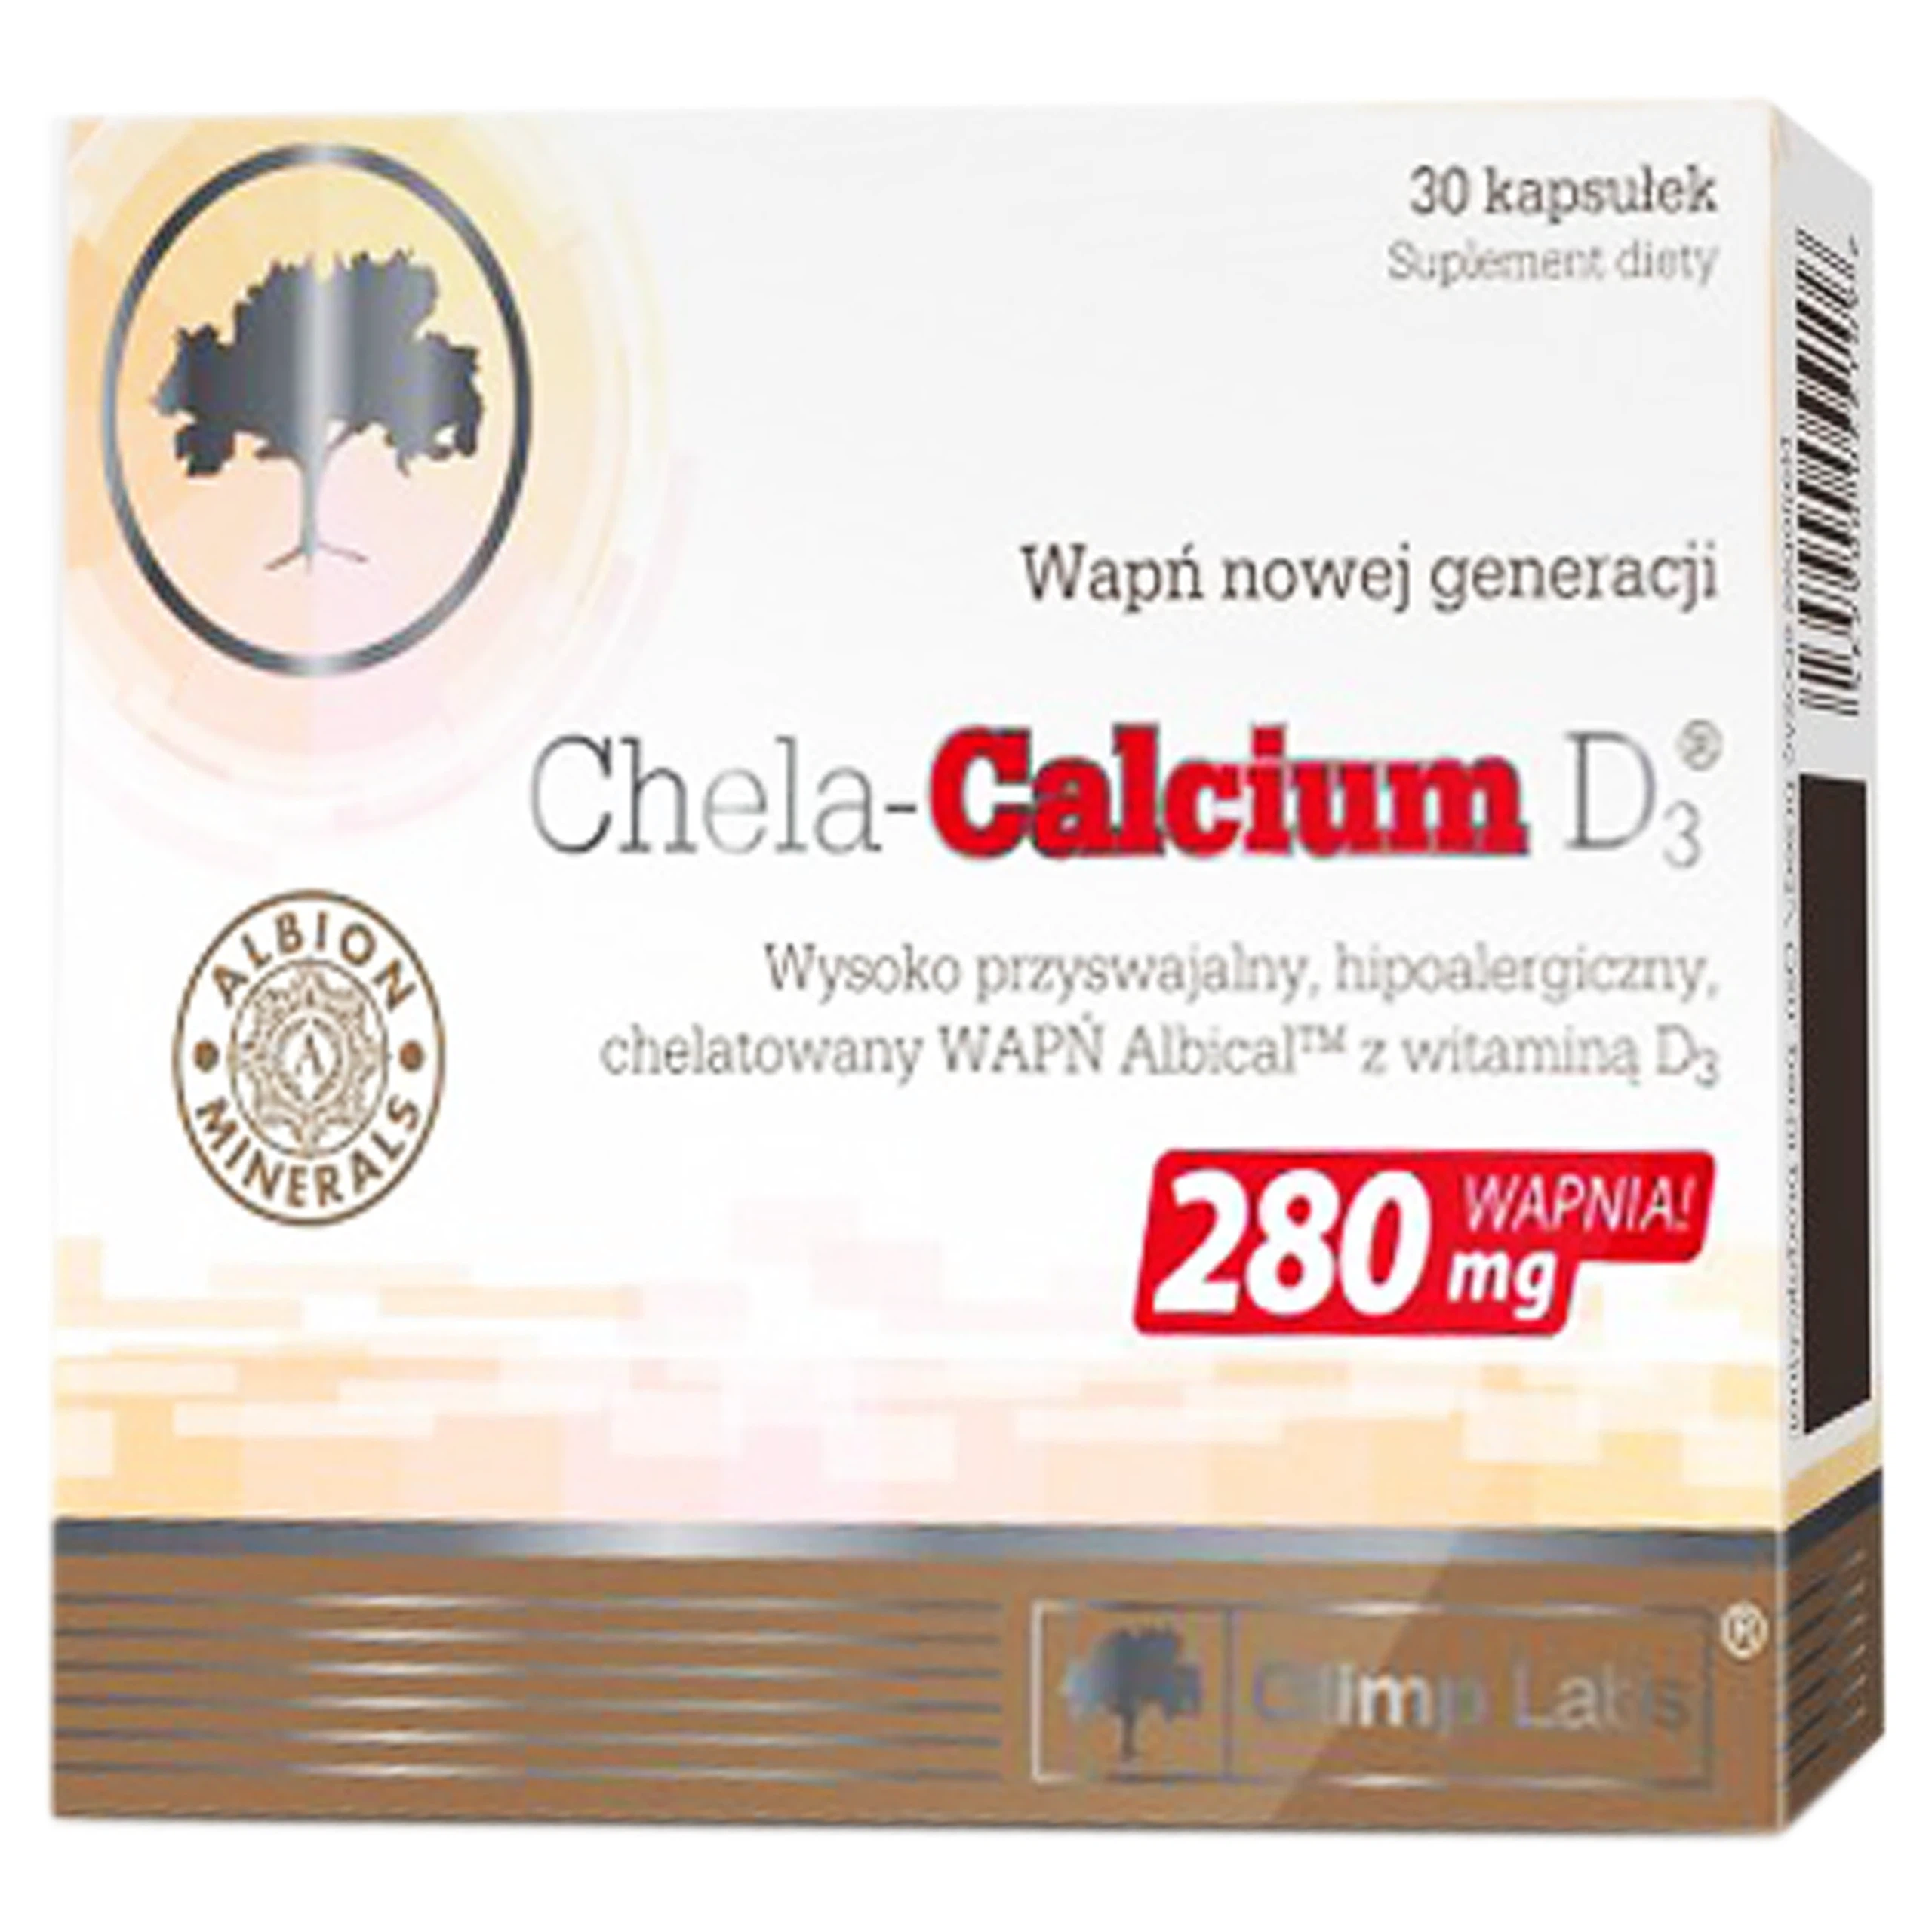 Viên uống Chela-Calcium D3 280mg Olimp Labs bổ sung canxi và vitamin D3, giảm nguy cơ loãng xương (30 viên)